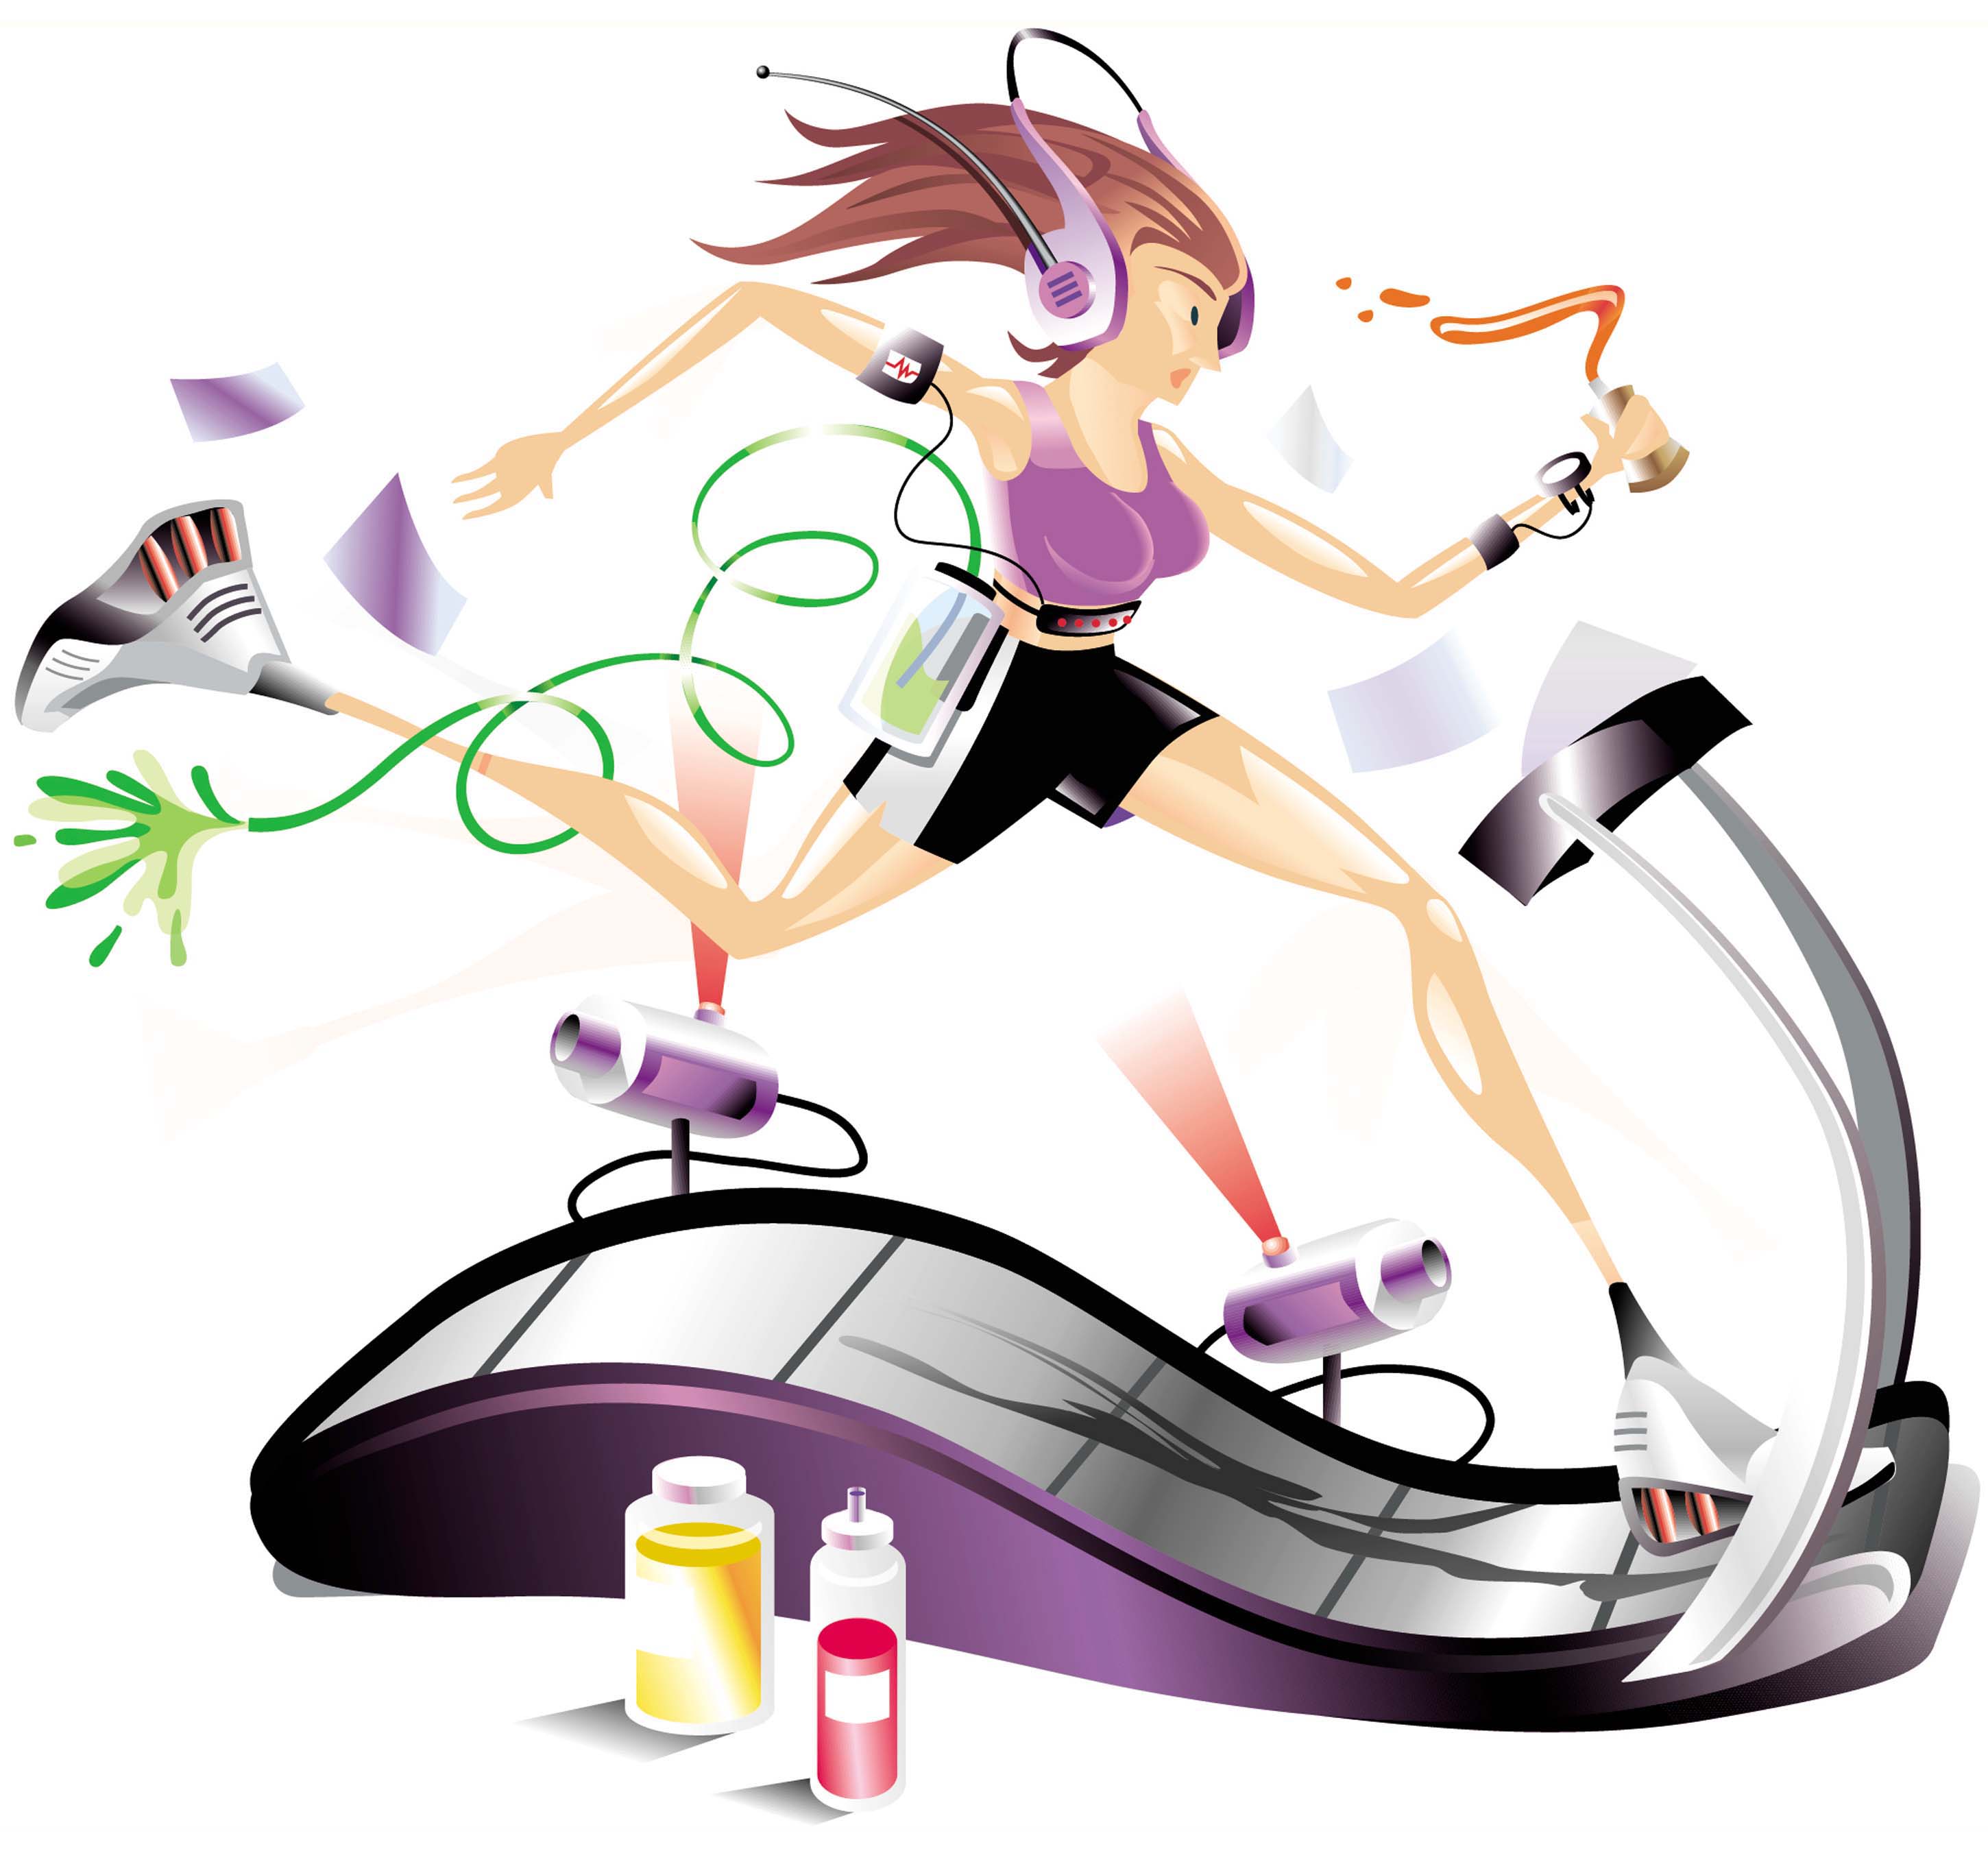 30 minute intense treadmill walk - Clip Art Library